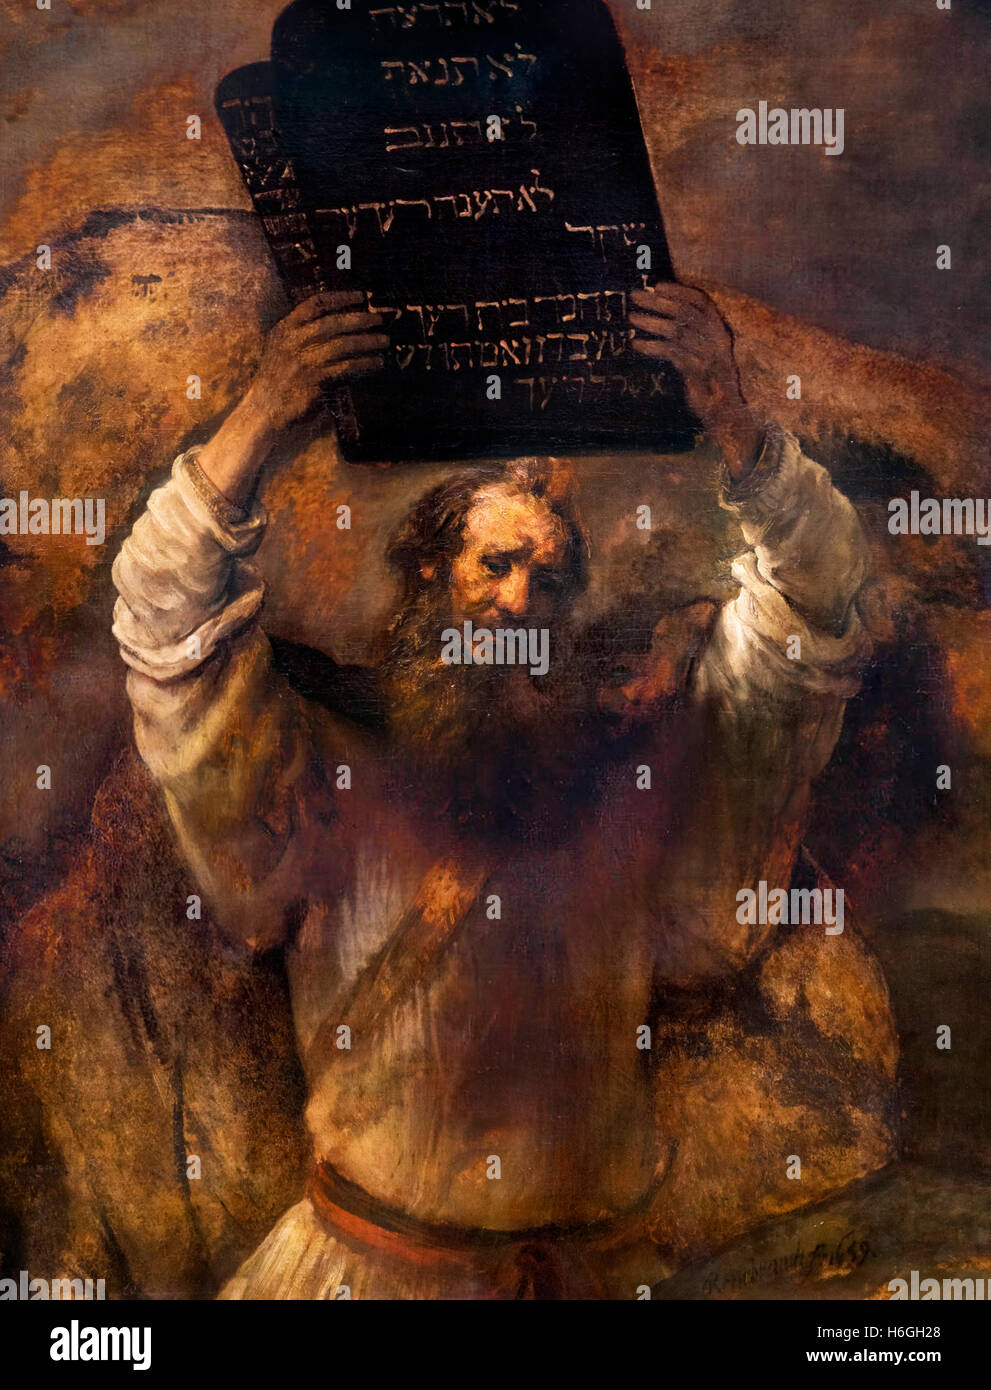 Mosè rompere le compresse della legge da parte di Rembrandt van Rijn, olio su tela, 1659. Il dipinto depicst Mosè fracassare le compresse in cui Dio aveva scritto i Dieci Comandamenti. Foto Stock